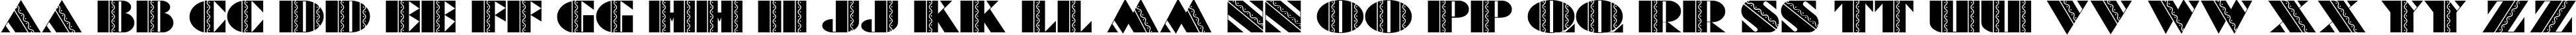 Пример написания английского алфавита шрифтом Batik Deco